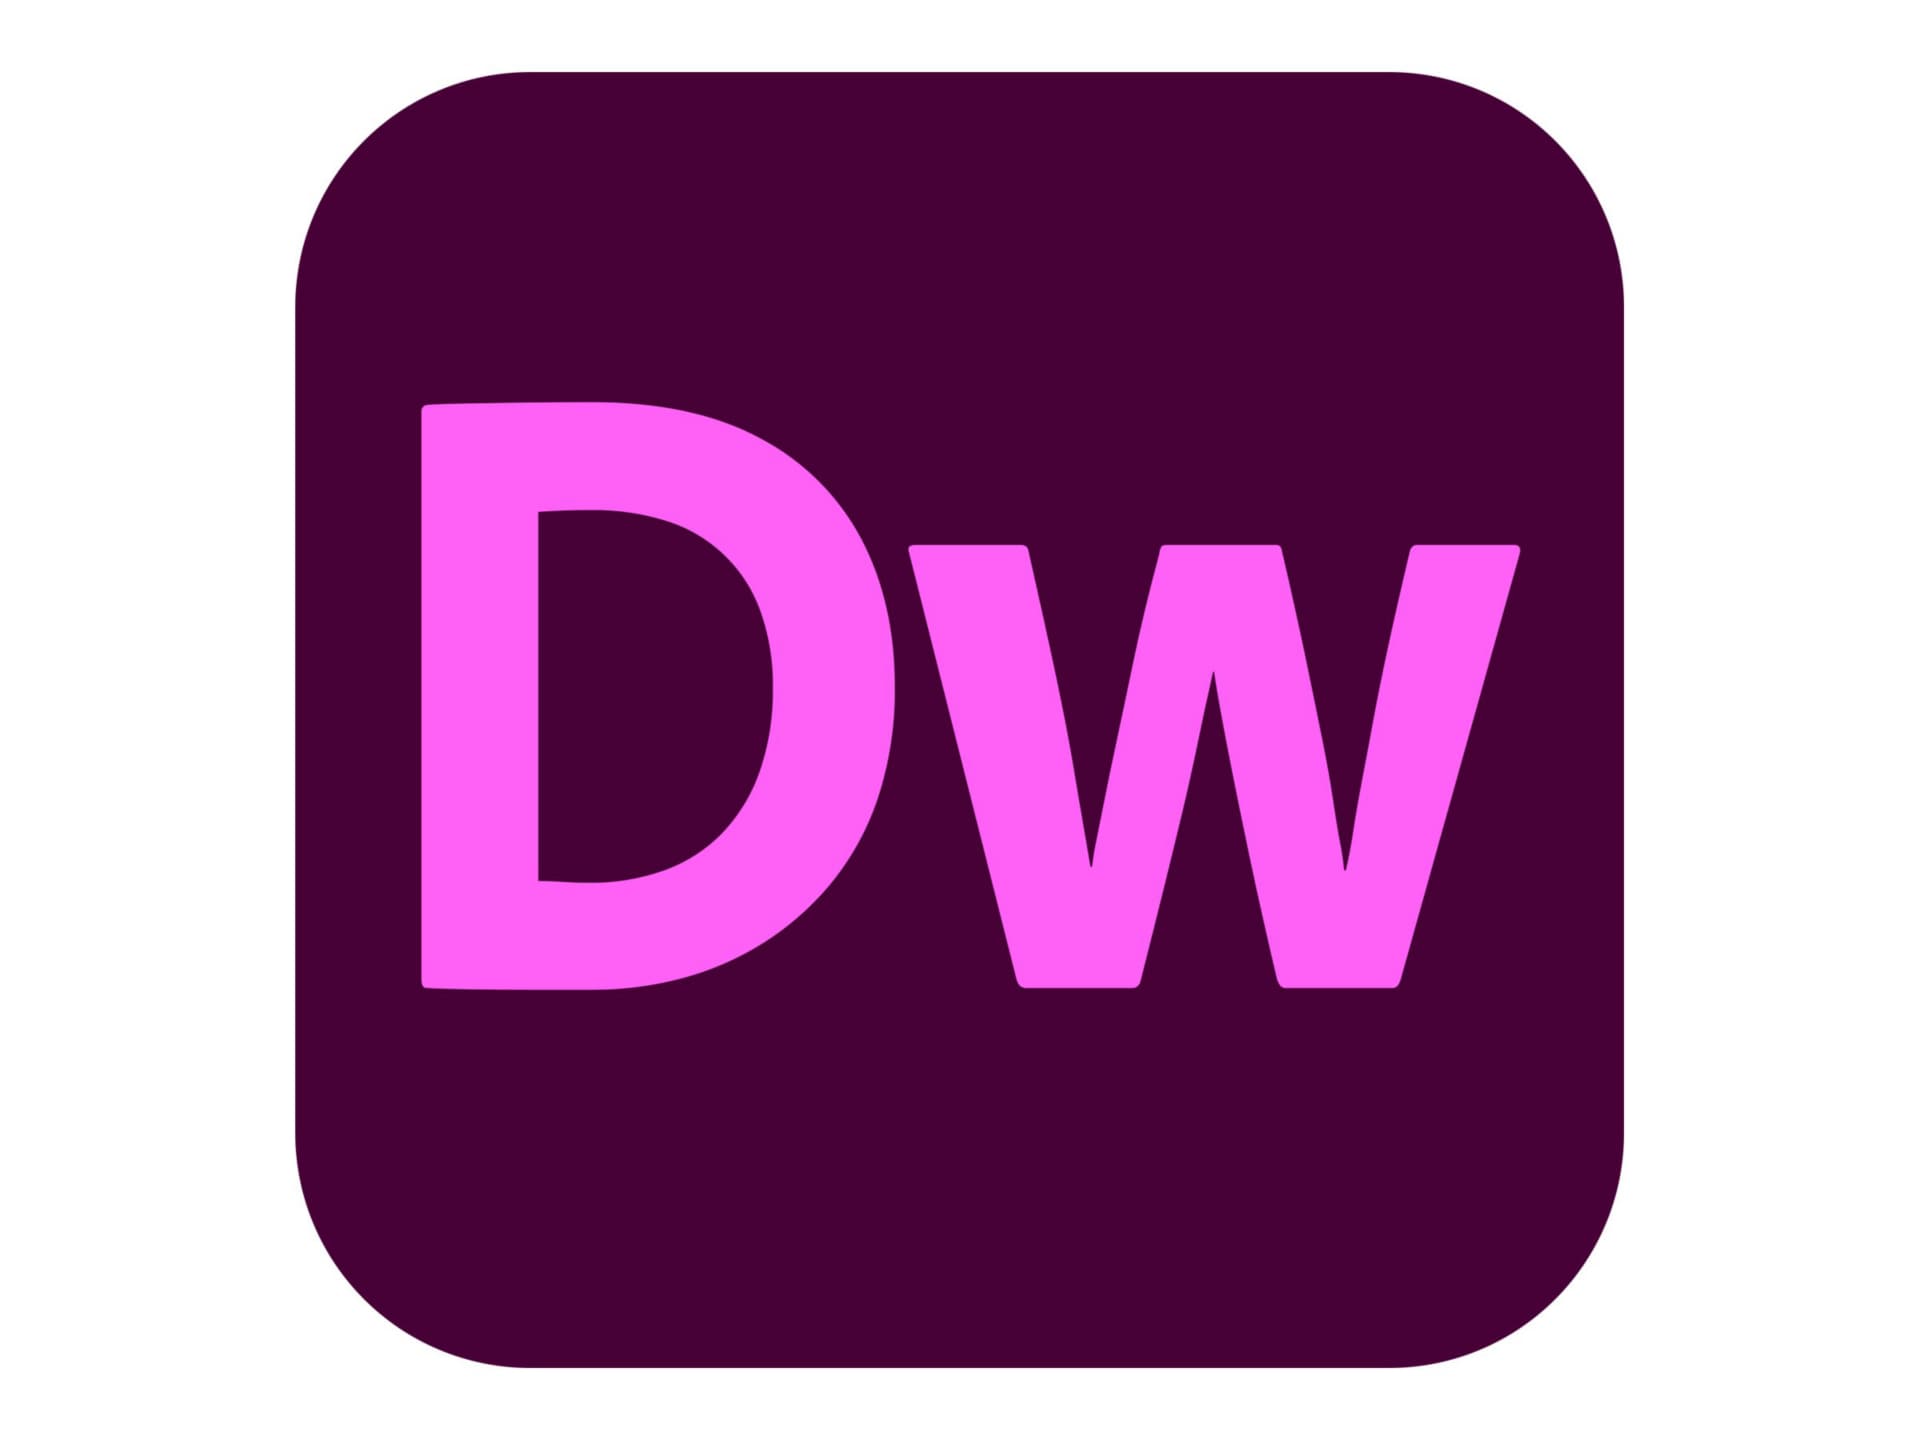 Adobe Dreamweaver CC for Enterprise - Subscription New (11 months) - 1 named user